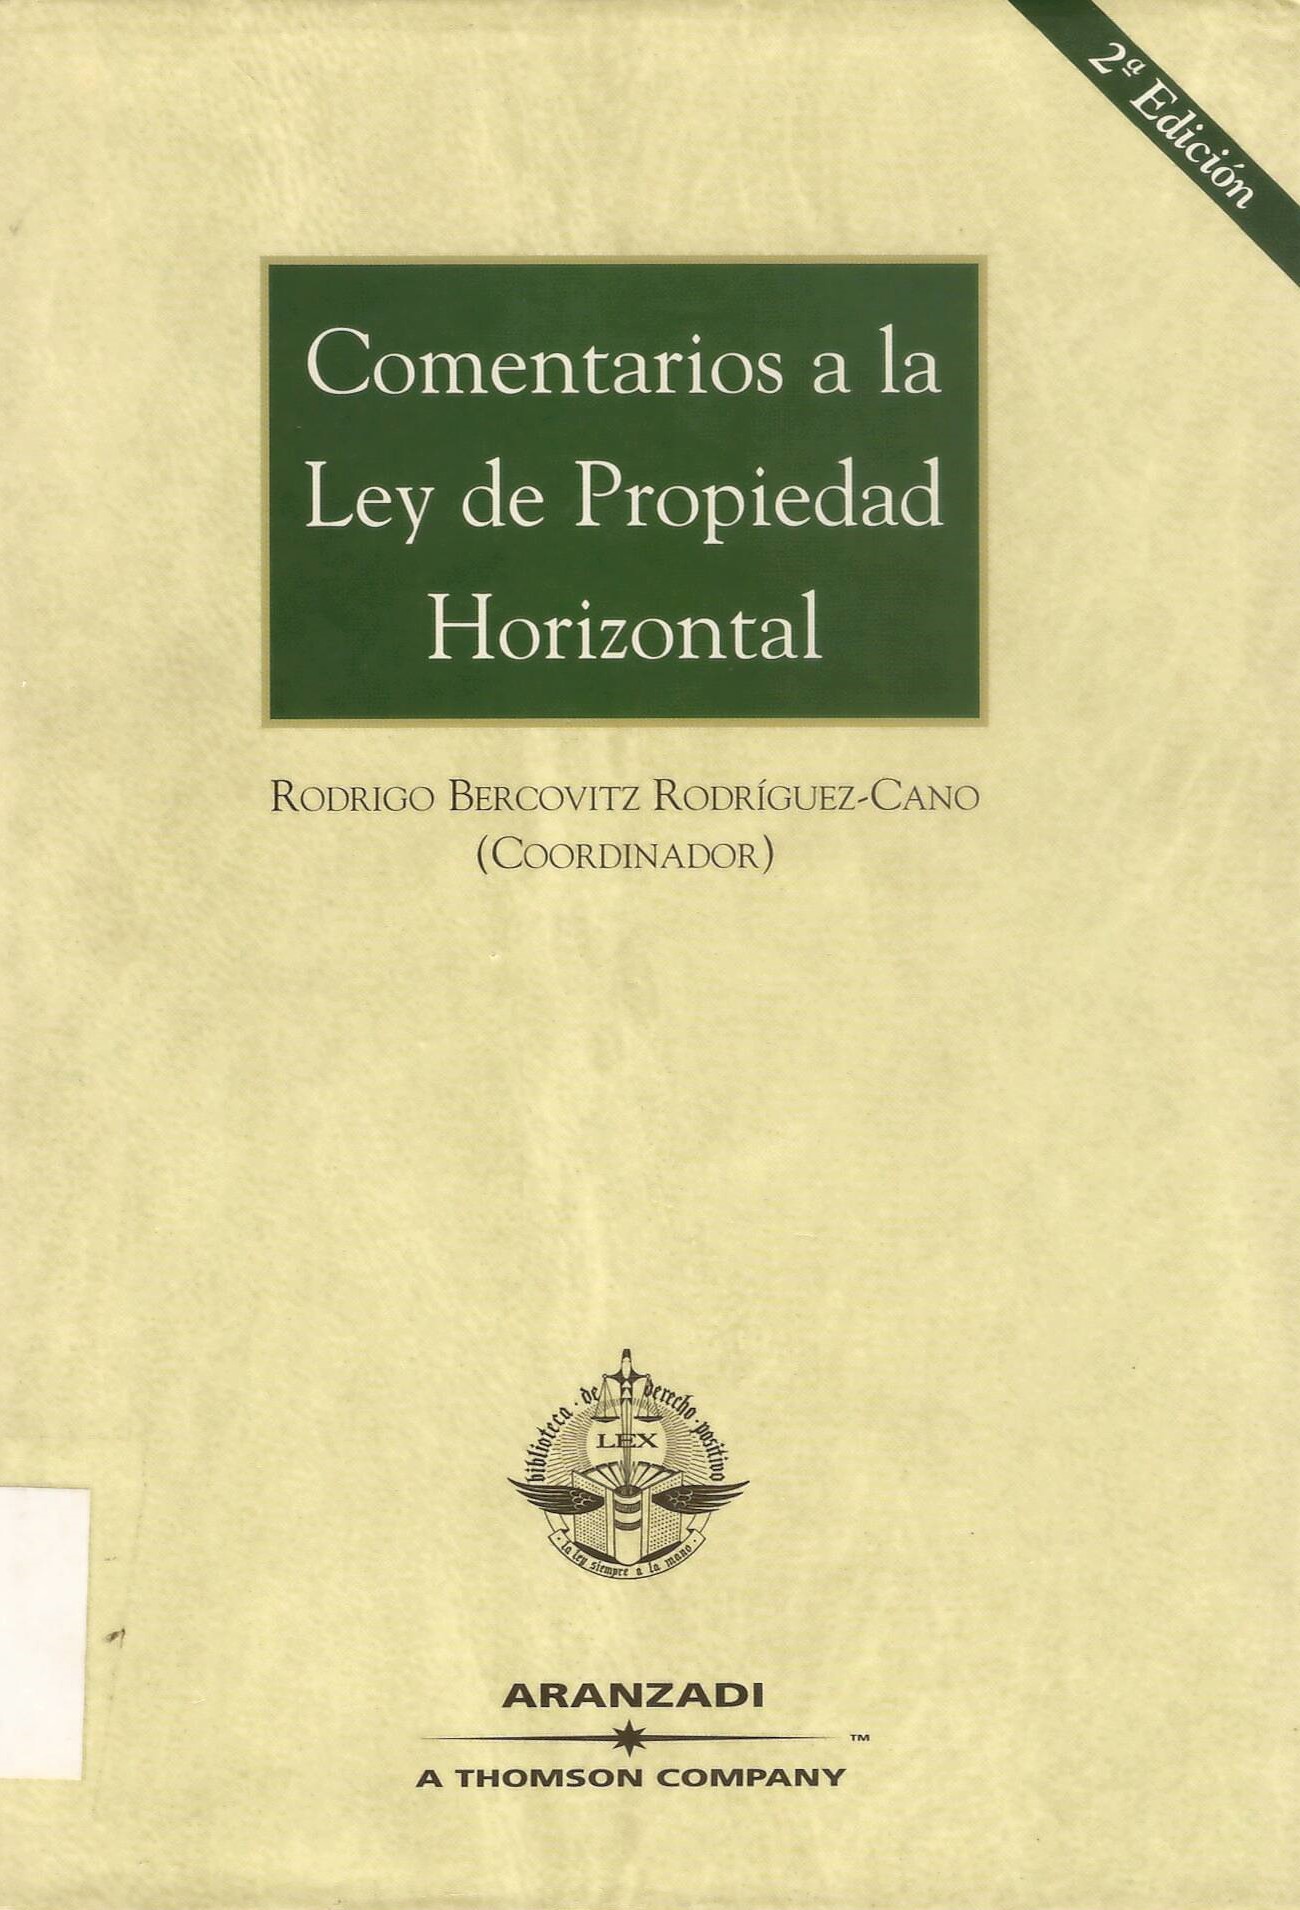 Imagen de portada del libro Comentarios a la Ley de Propiedad Horizontal